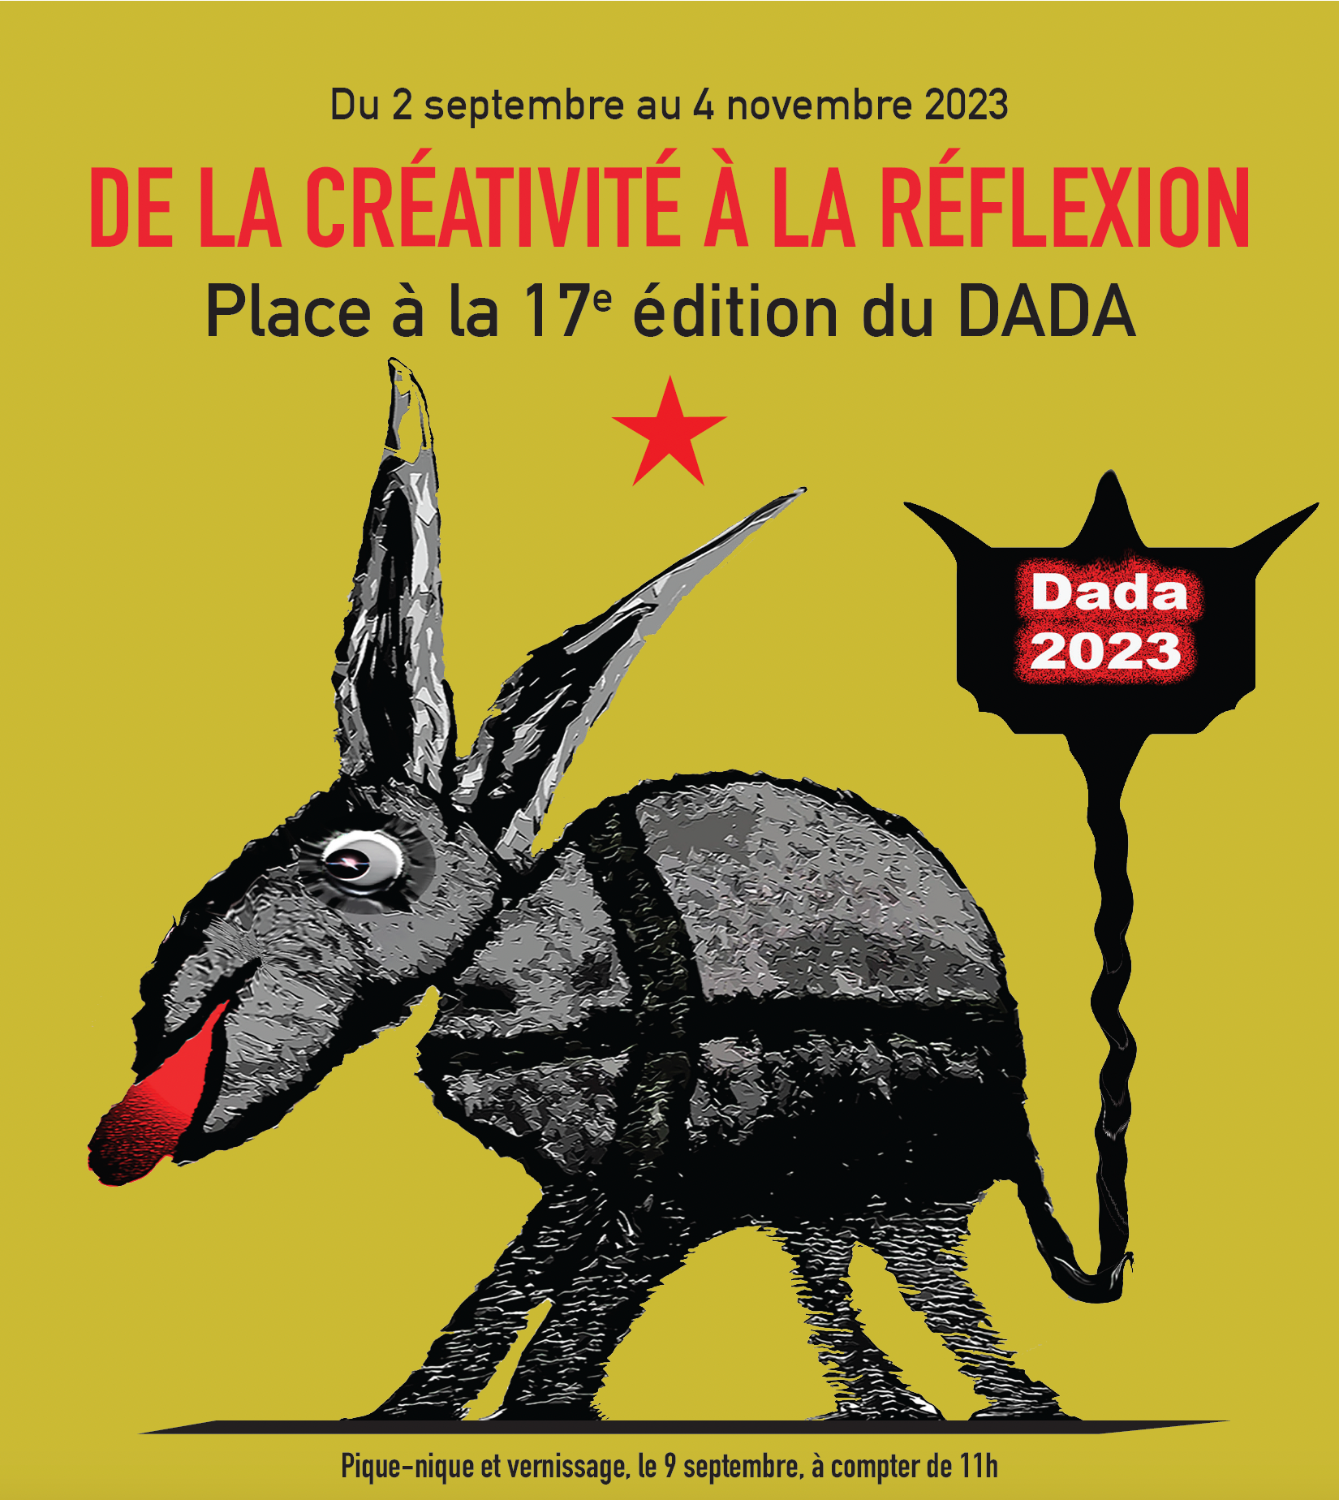 Exposition DADA 2023, 17e édition